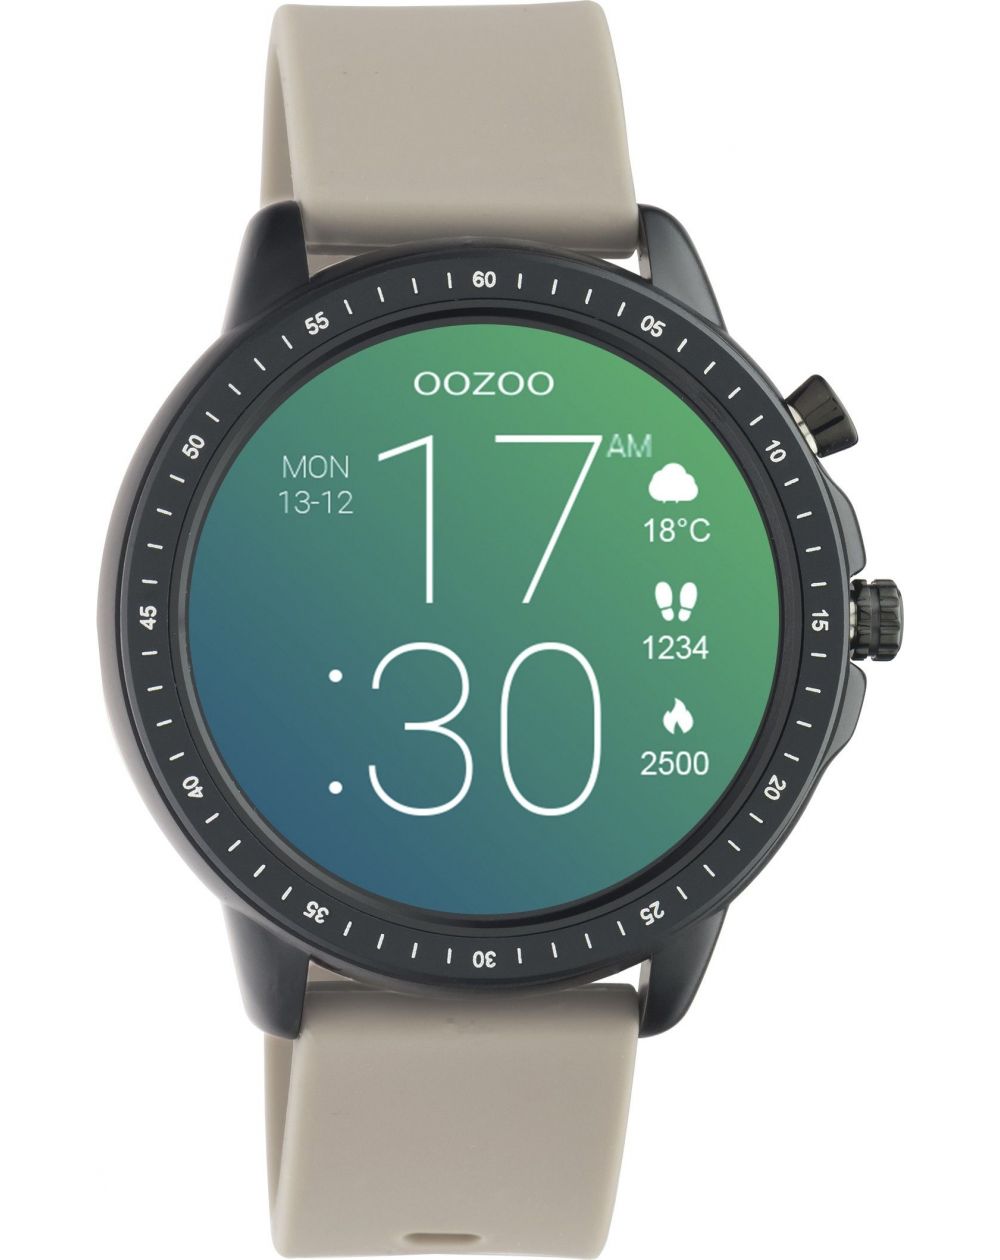 Montre Oozoo Q00330 - Smartwatch - Marque OOZOO - Livraison gratuite